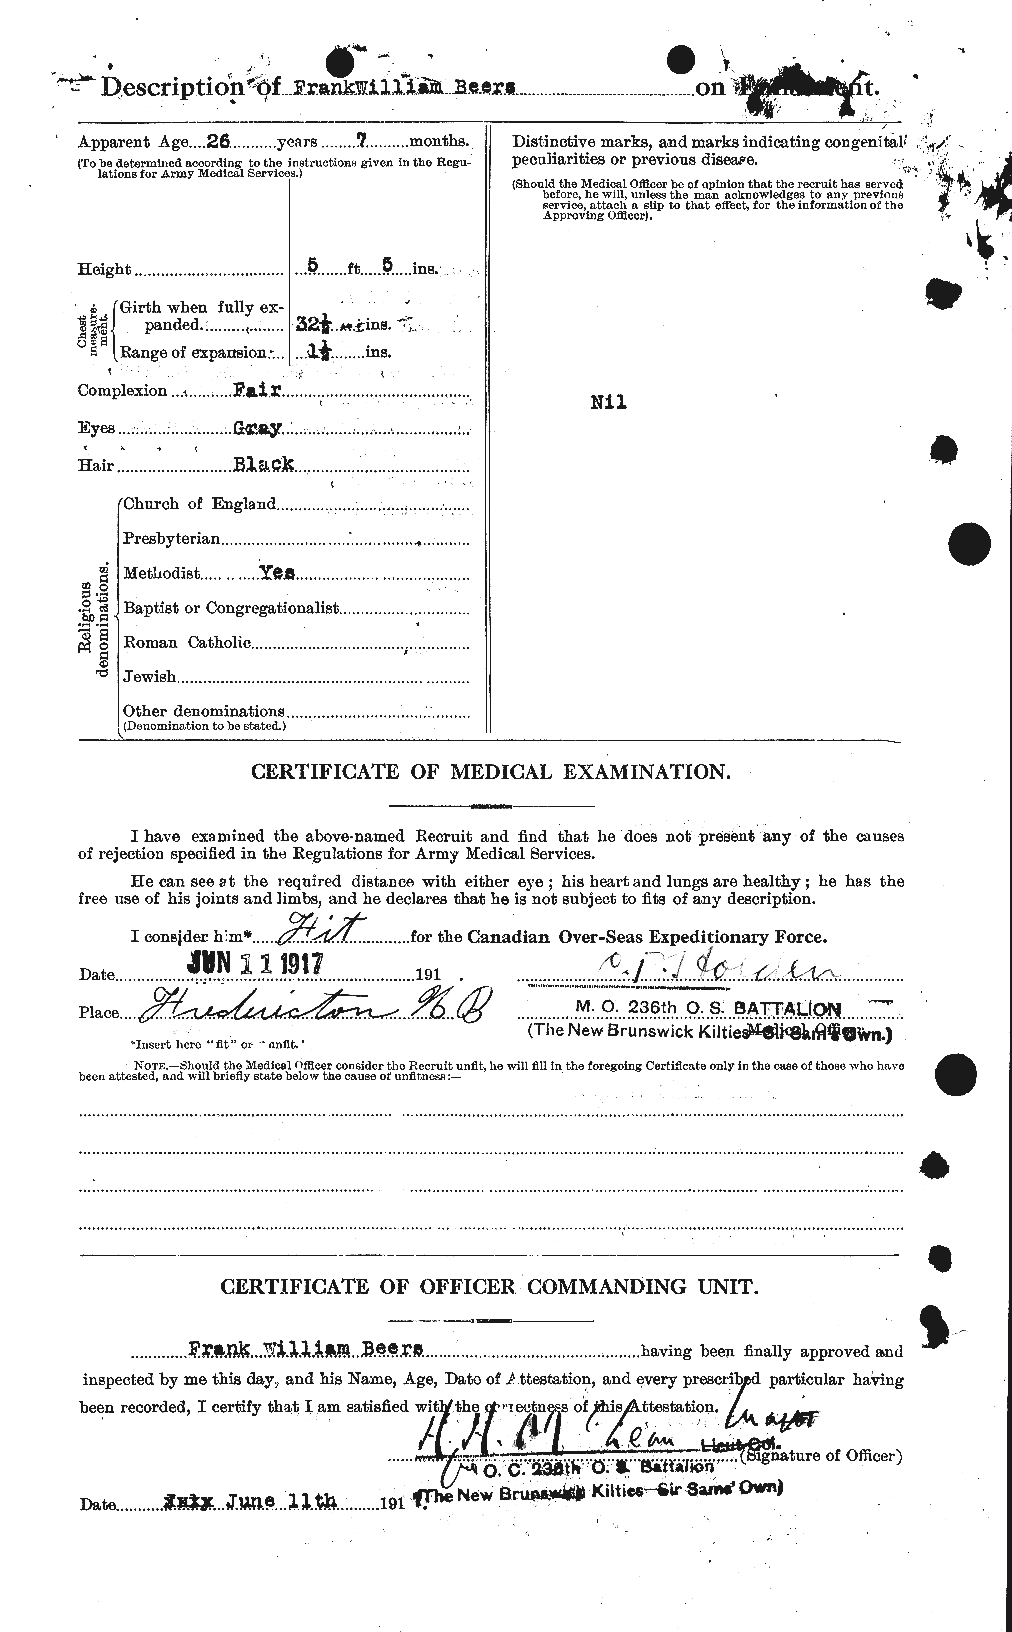 Dossiers du Personnel de la Première Guerre mondiale - CEC 241597b